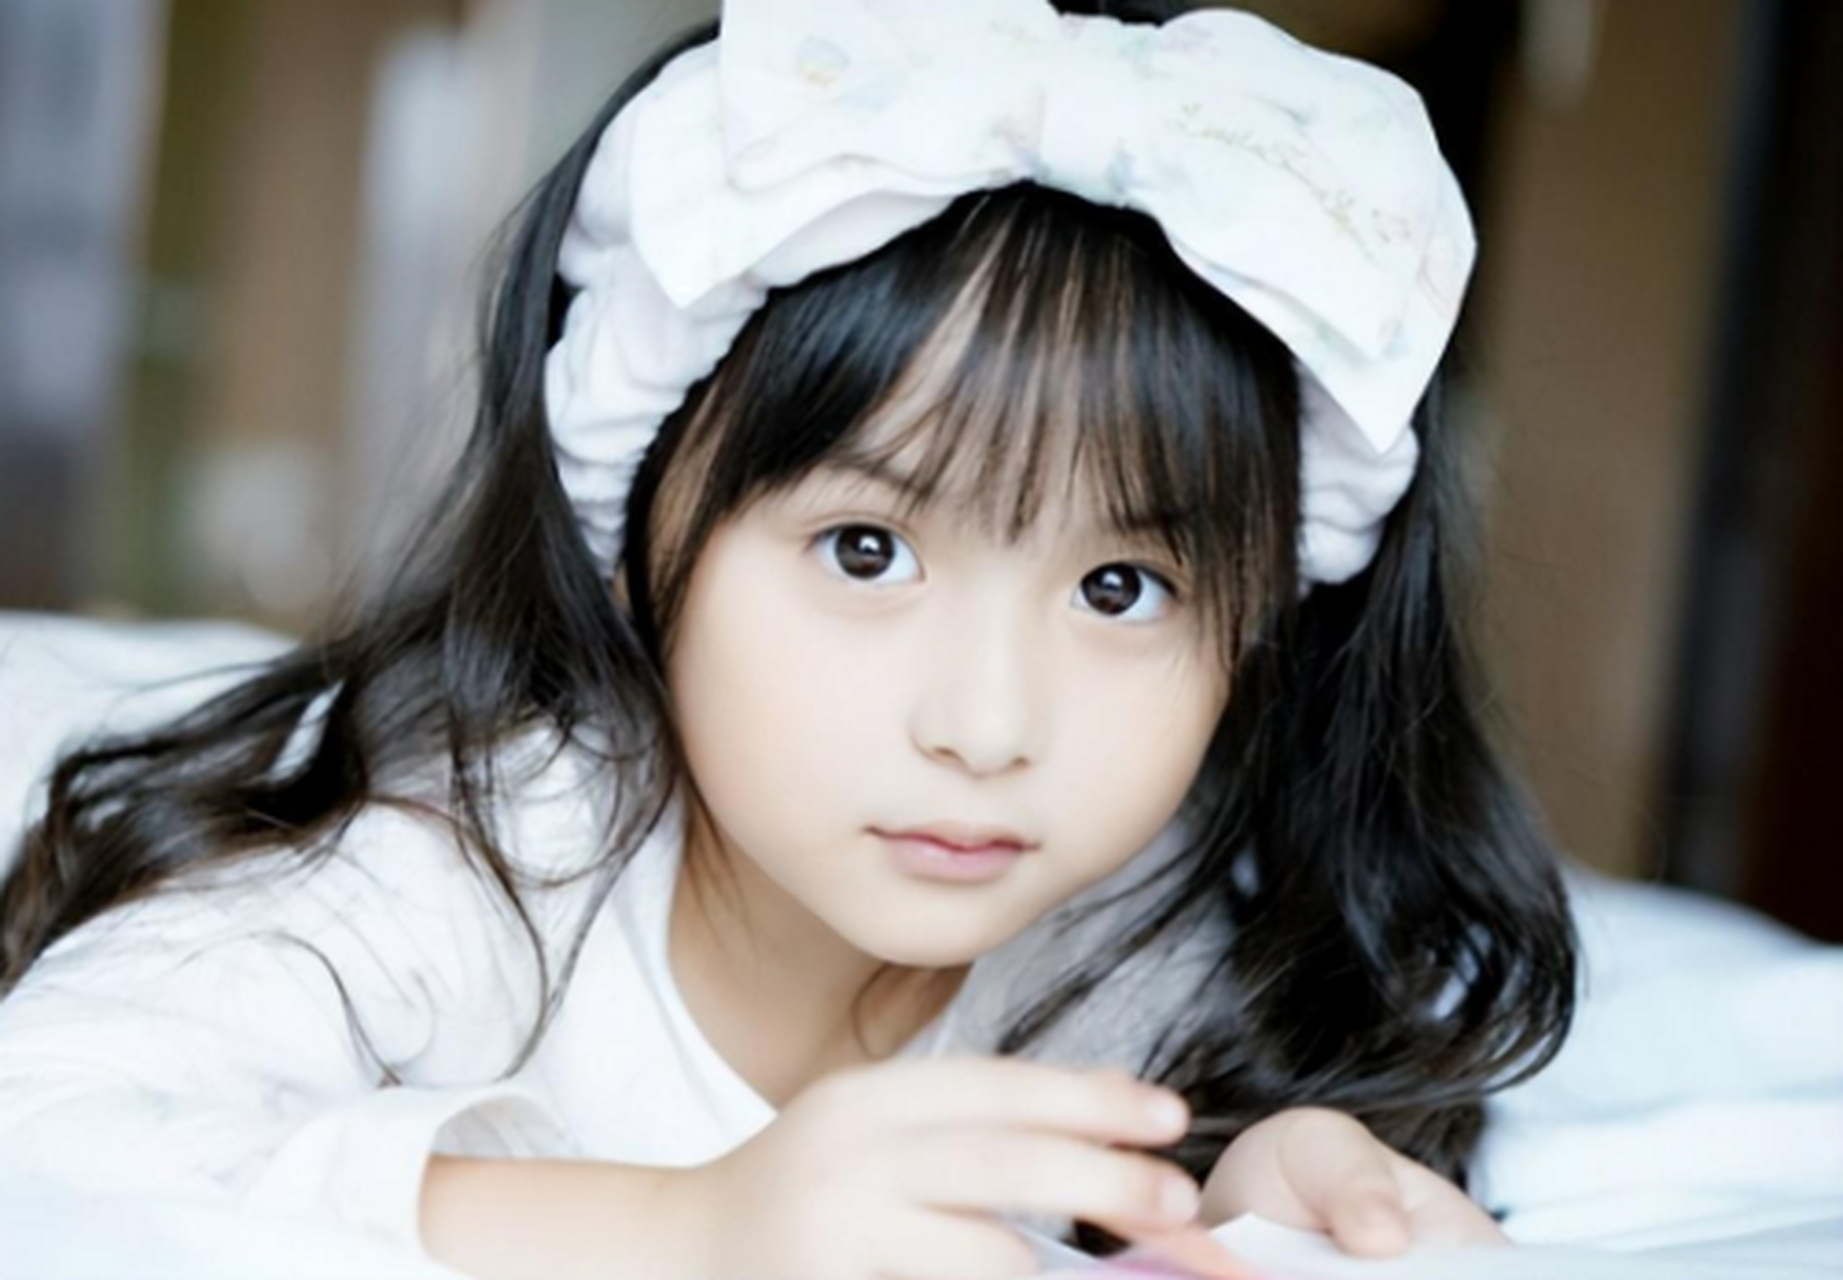 中国最美的女孩童星图片